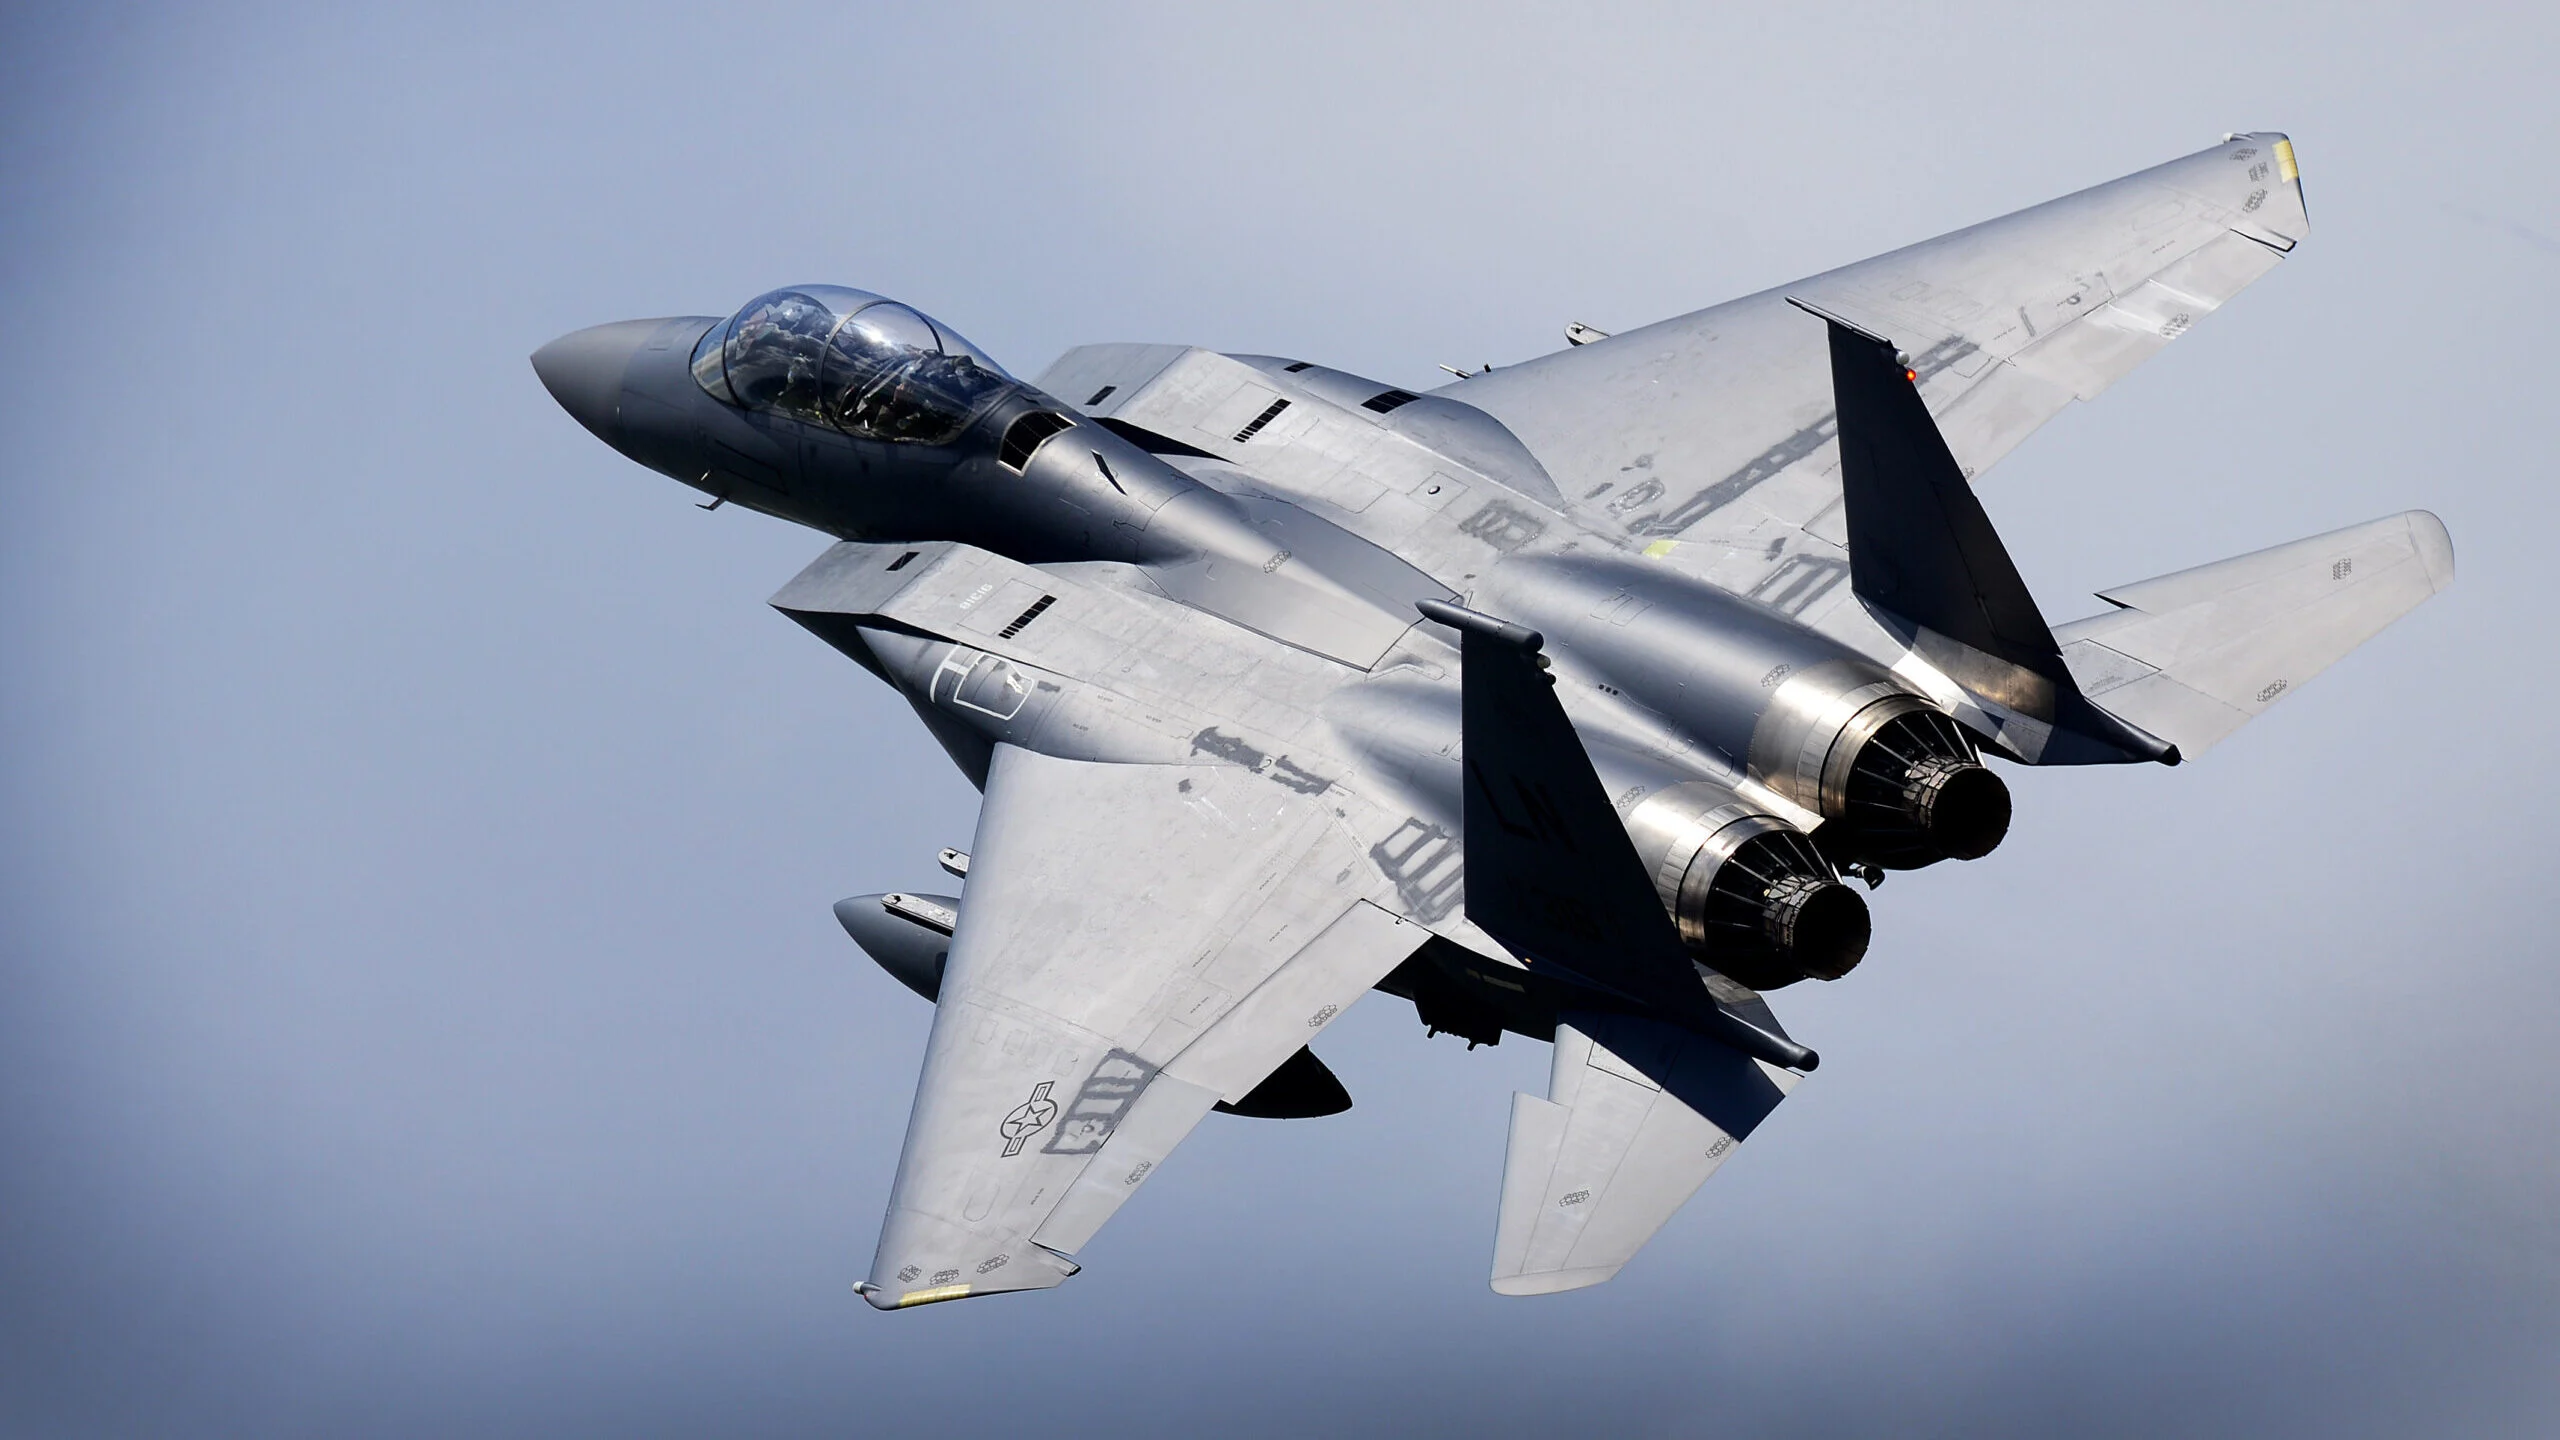 Πολωνία: Προς νέα  προμήθεια μαχητικών αεροσκαφών μετά τα F-35 – Η επιλογή ανάμεσα Eurofighter  ή F-15EX